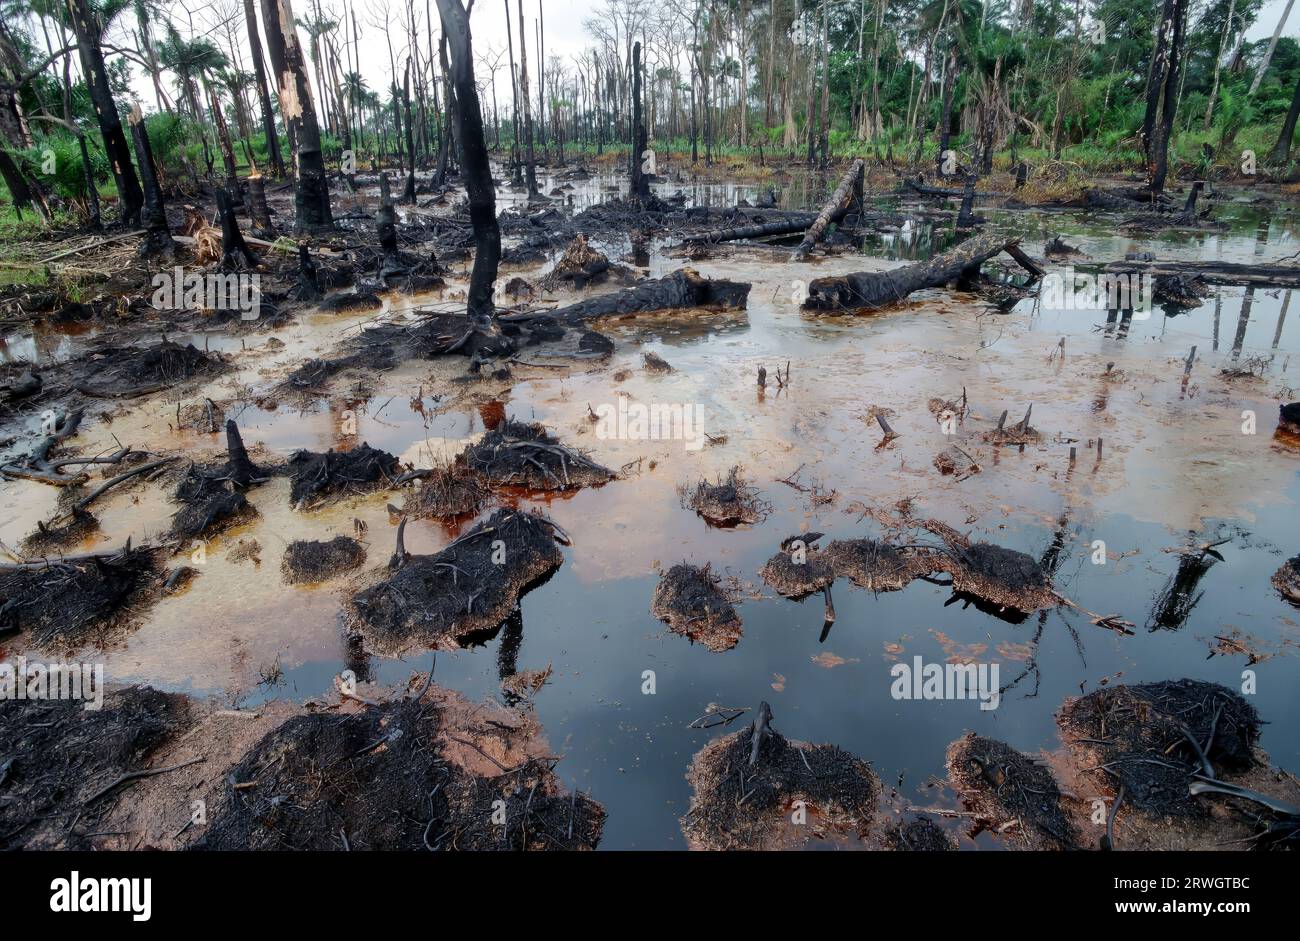 Nigeria, Delta del Niger, Ogoniland. Distruzione ambientale causata dalla fuoriuscita di petrolio greggio nella zona di produzione petrolifera del sud del paese, prevalentemente abitata dalla tribù Ogoni. Foto Stock